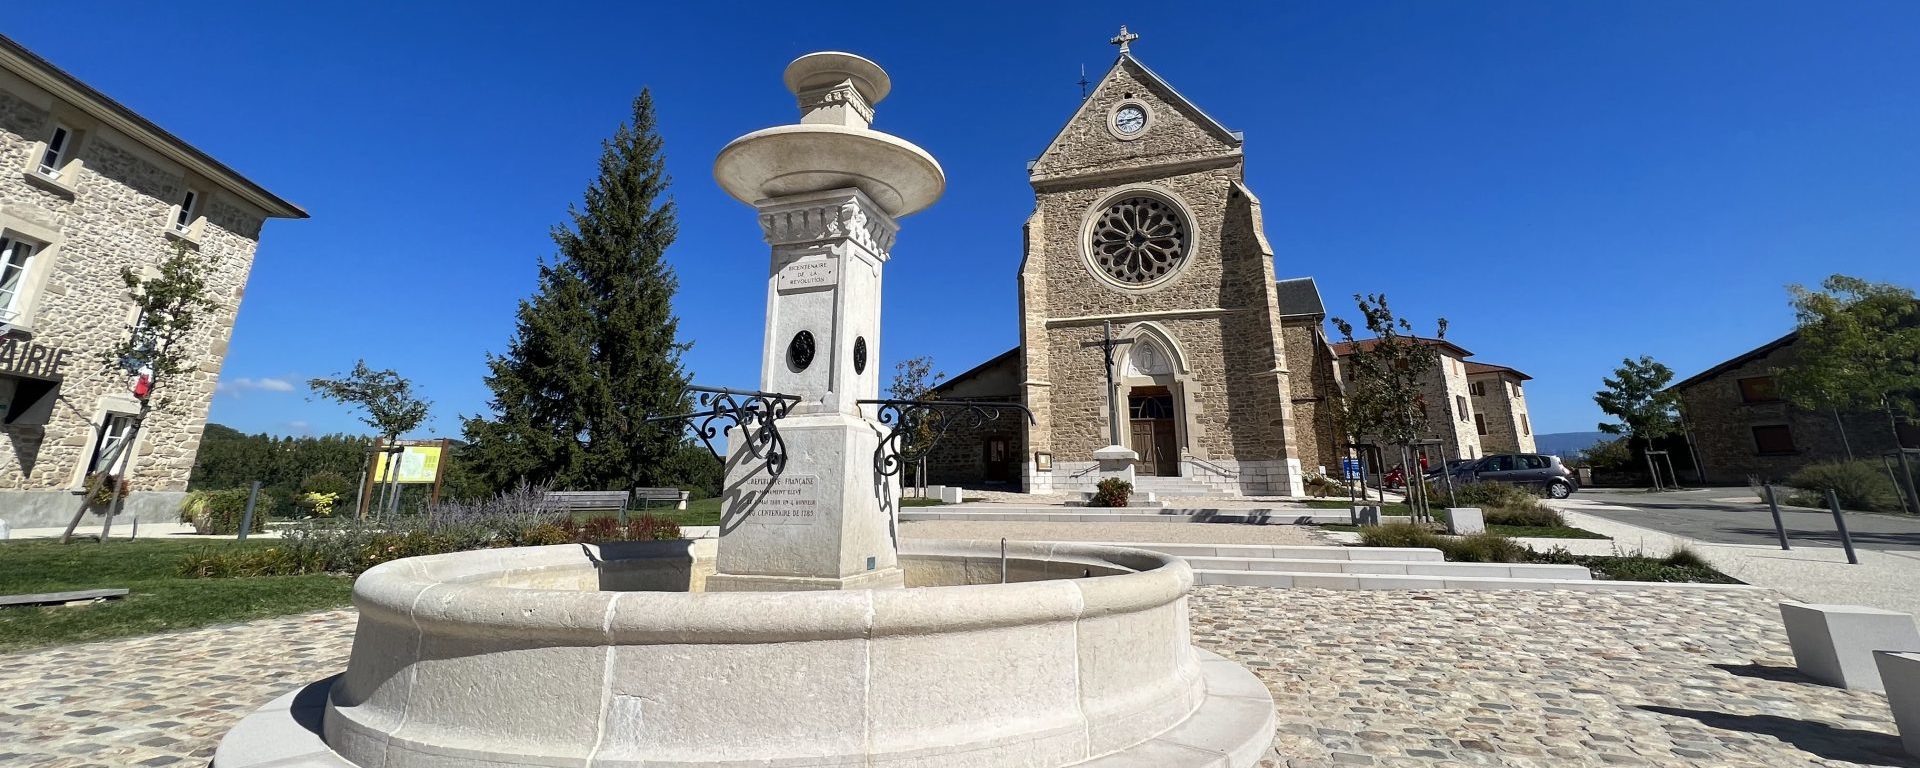 place du village de Varacieux en Isère avec la fontaine au centre et l'église